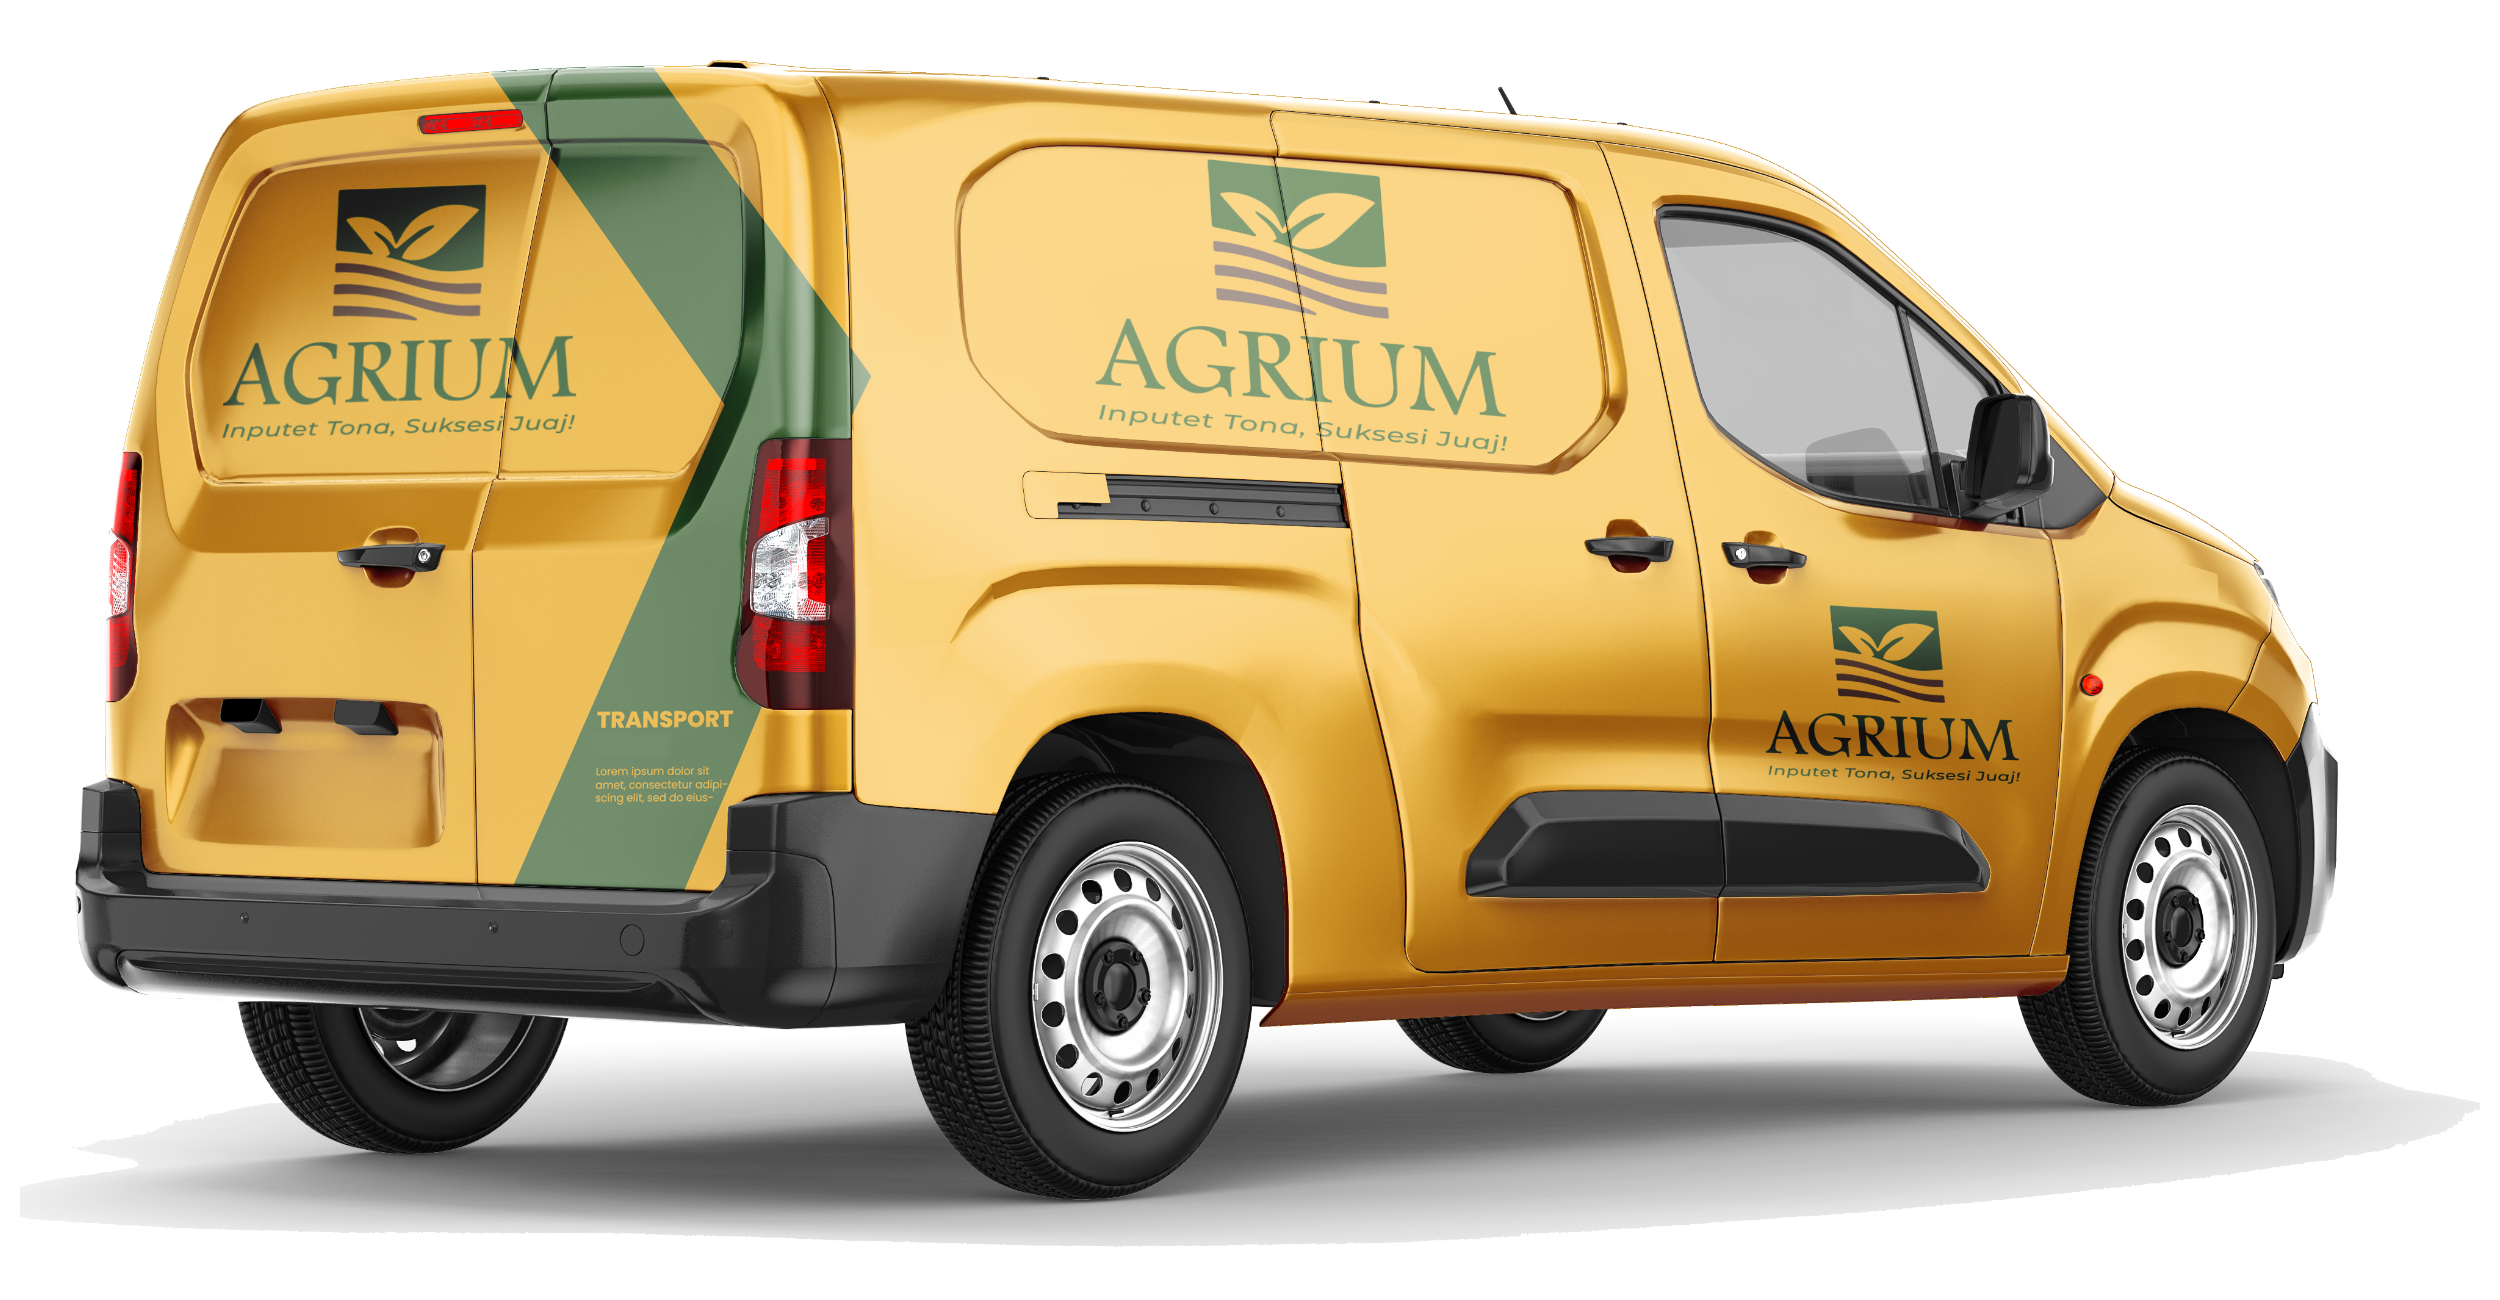 Agrium vans